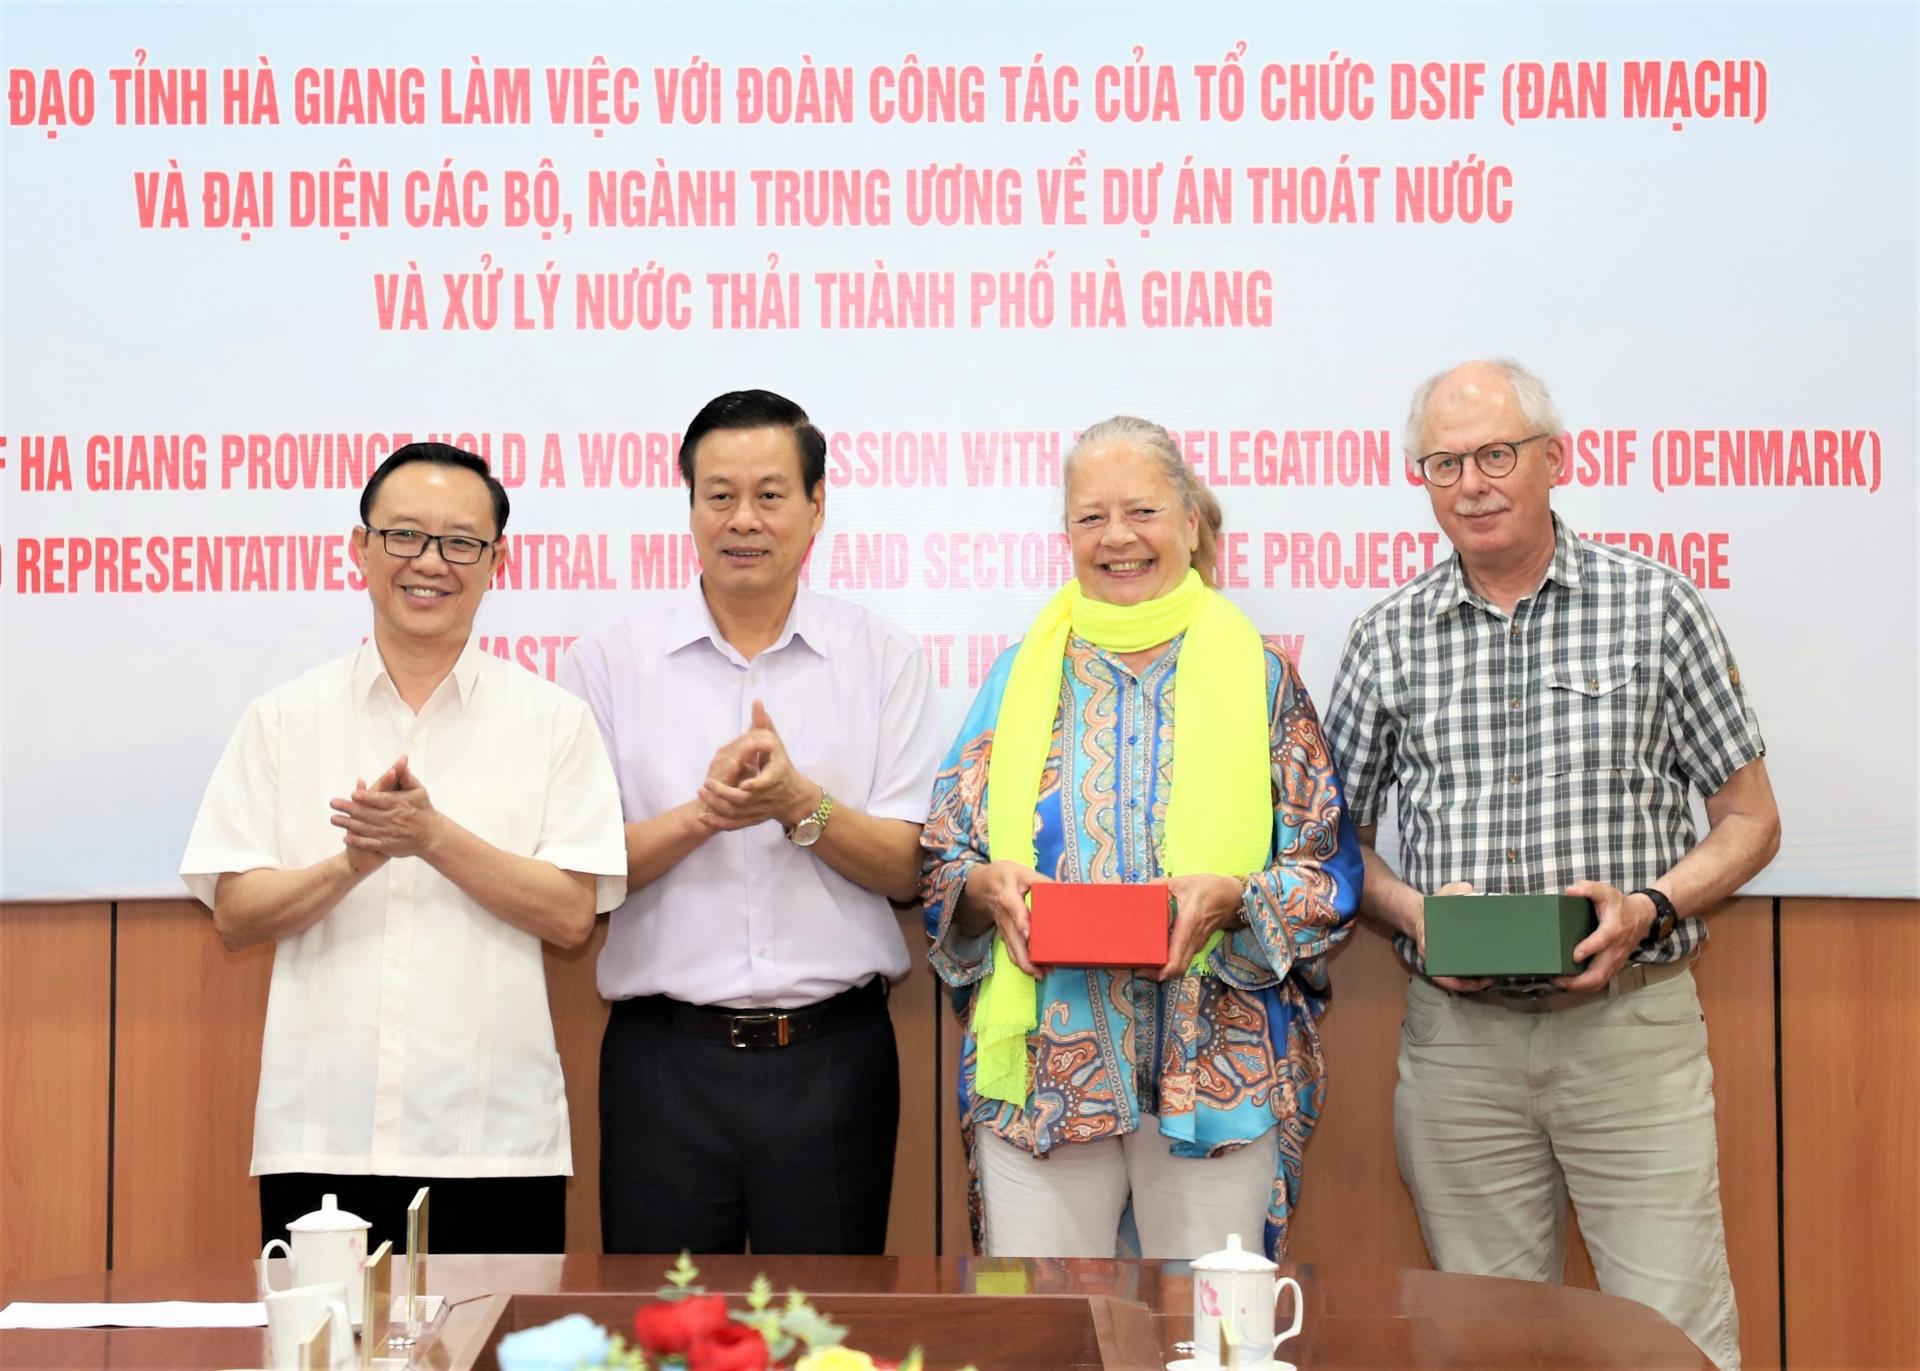 Chủ tịch HĐND tỉnh Thào Hồng Sơn và Chủ tịch UBND tỉnh Nguyễn Văn Sơn tặng sản phẩm tiêu biểu của tỉnh cho bà Bente Schiller và đoàn công tác.